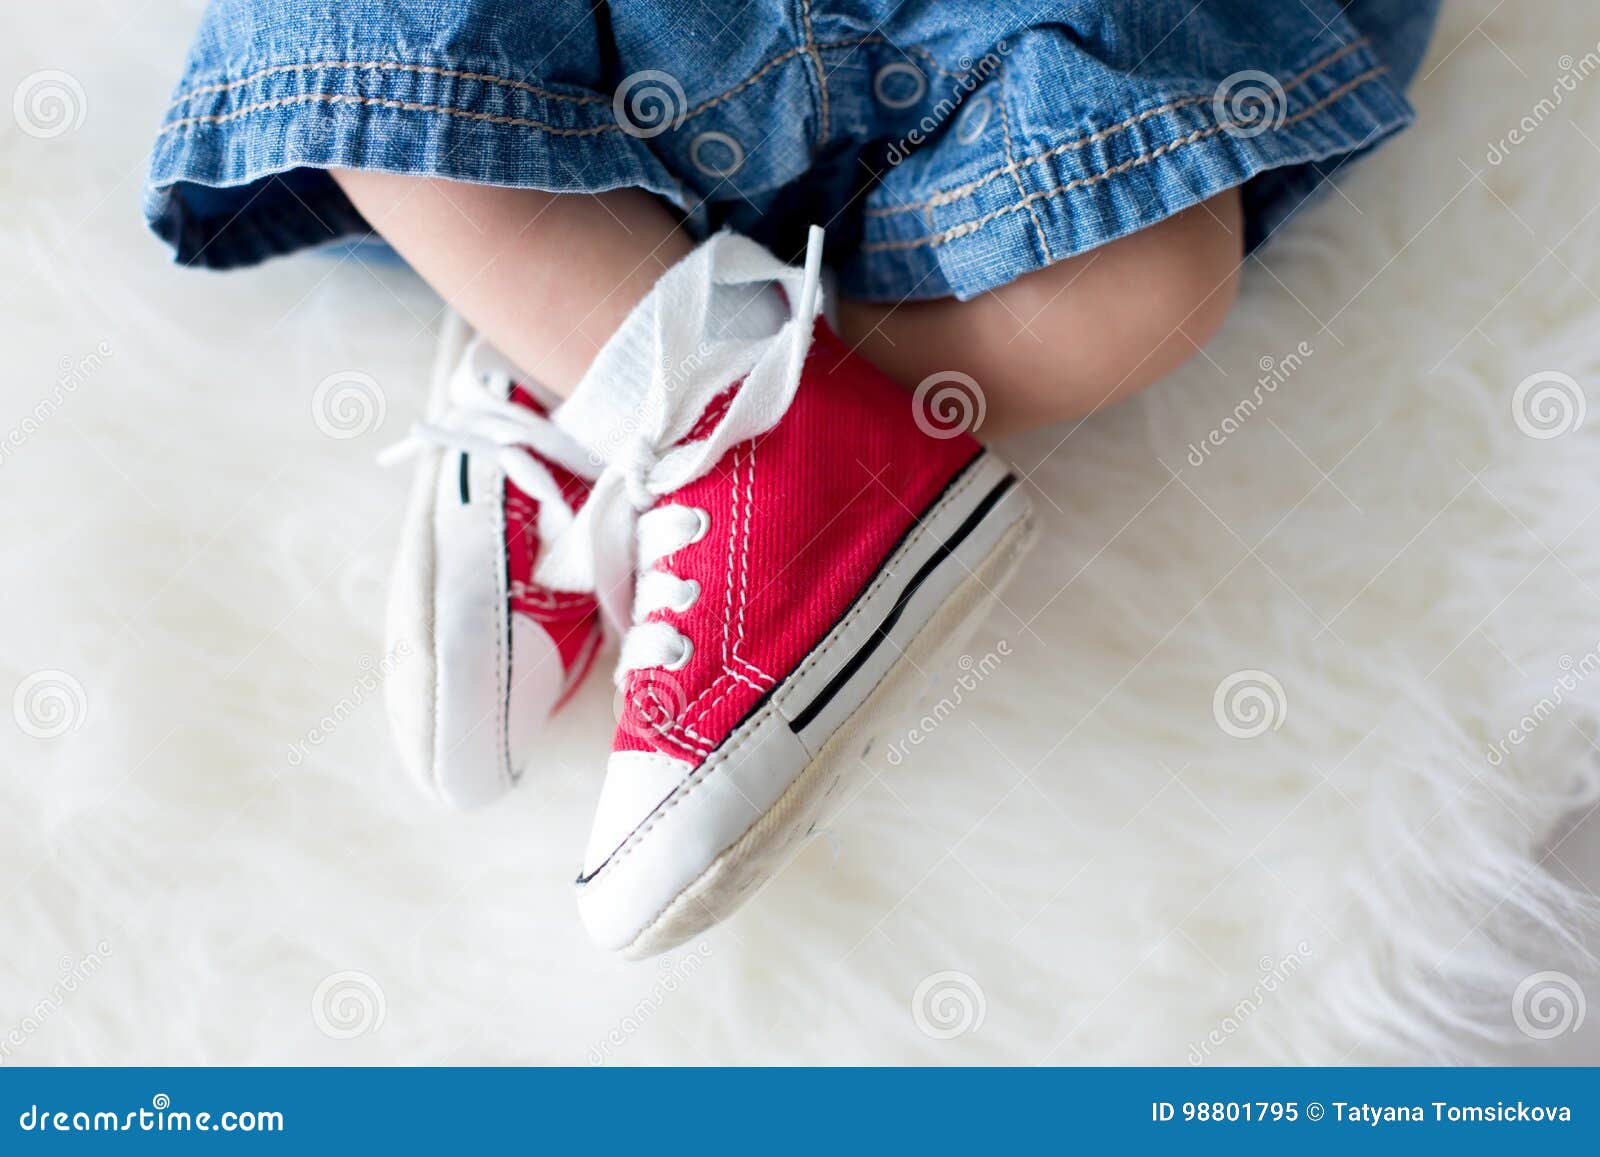 Zapatillas De Deporte Rojas De Moda Pequeños Pies Recién Los Bebés Imagen de archivo - de crema, nuevo: 98801795